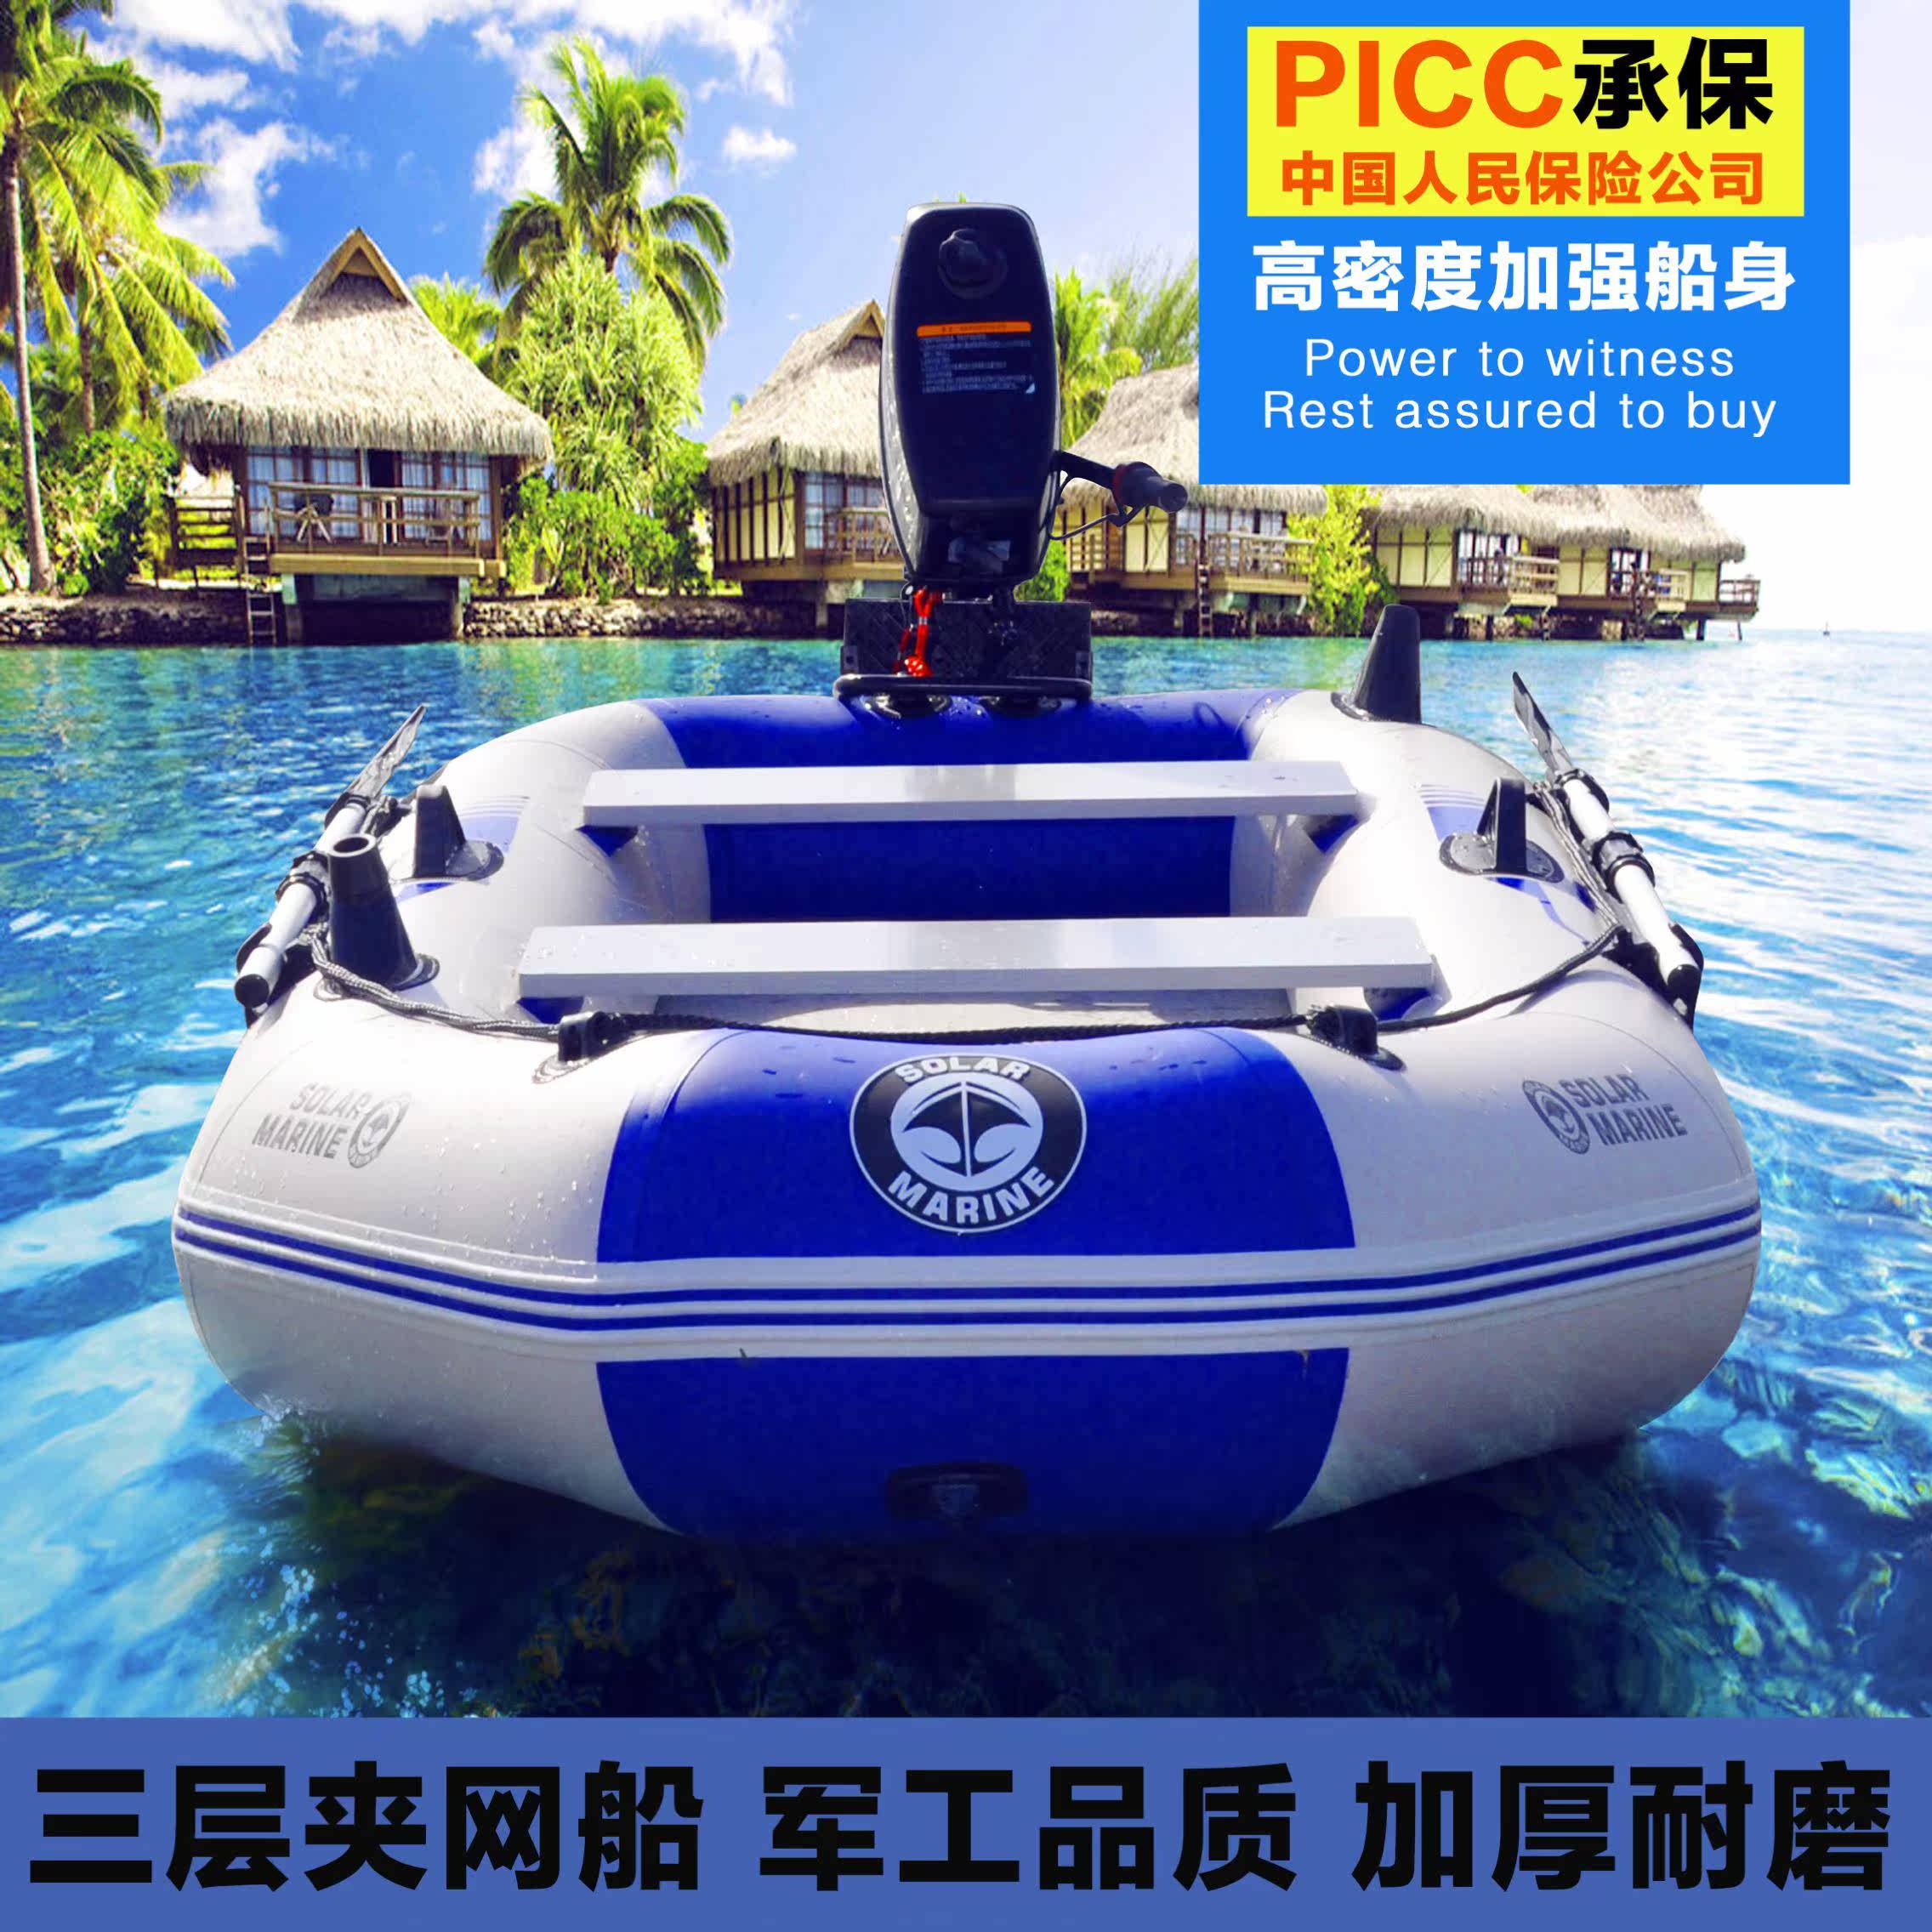 塑料船渔船游艇新品 塑料船渔船游艇价格 塑料船渔船游艇包邮 品牌 淘宝海外